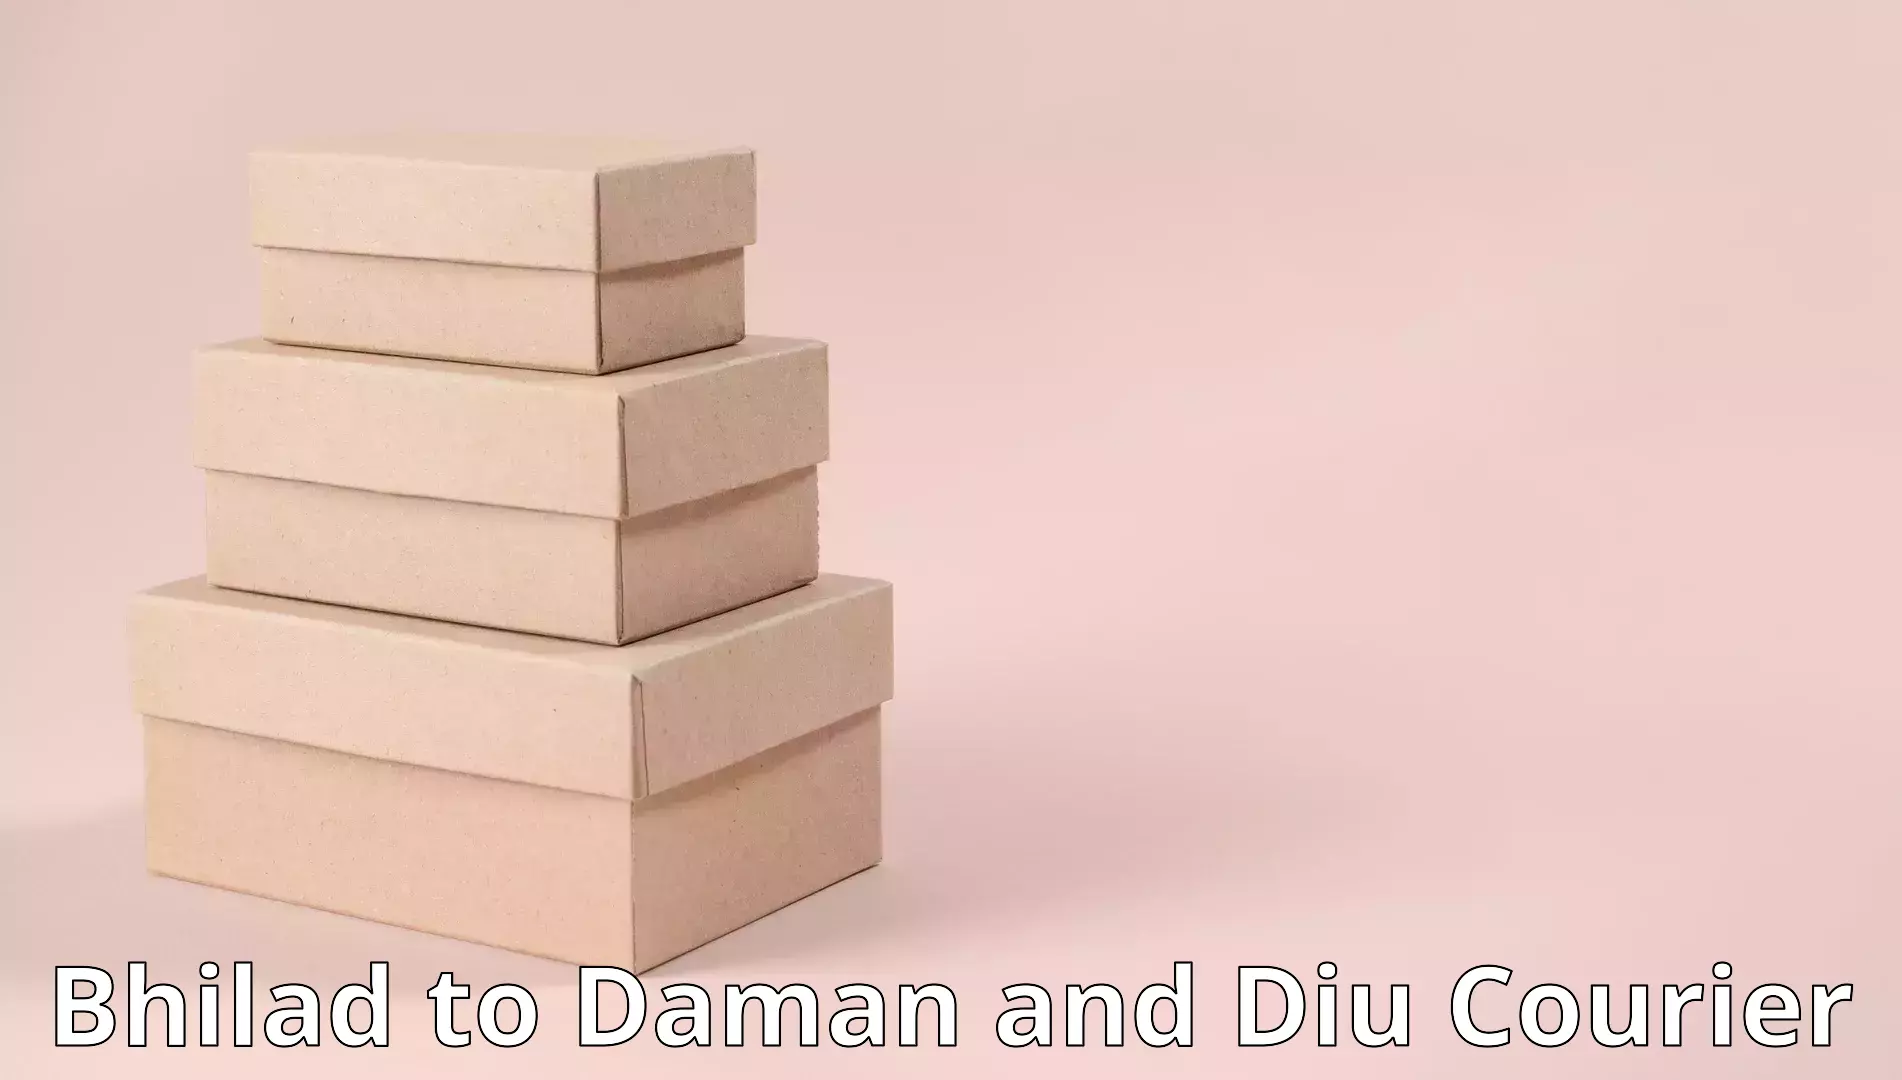 Stress-free furniture moving Bhilad to Daman and Diu